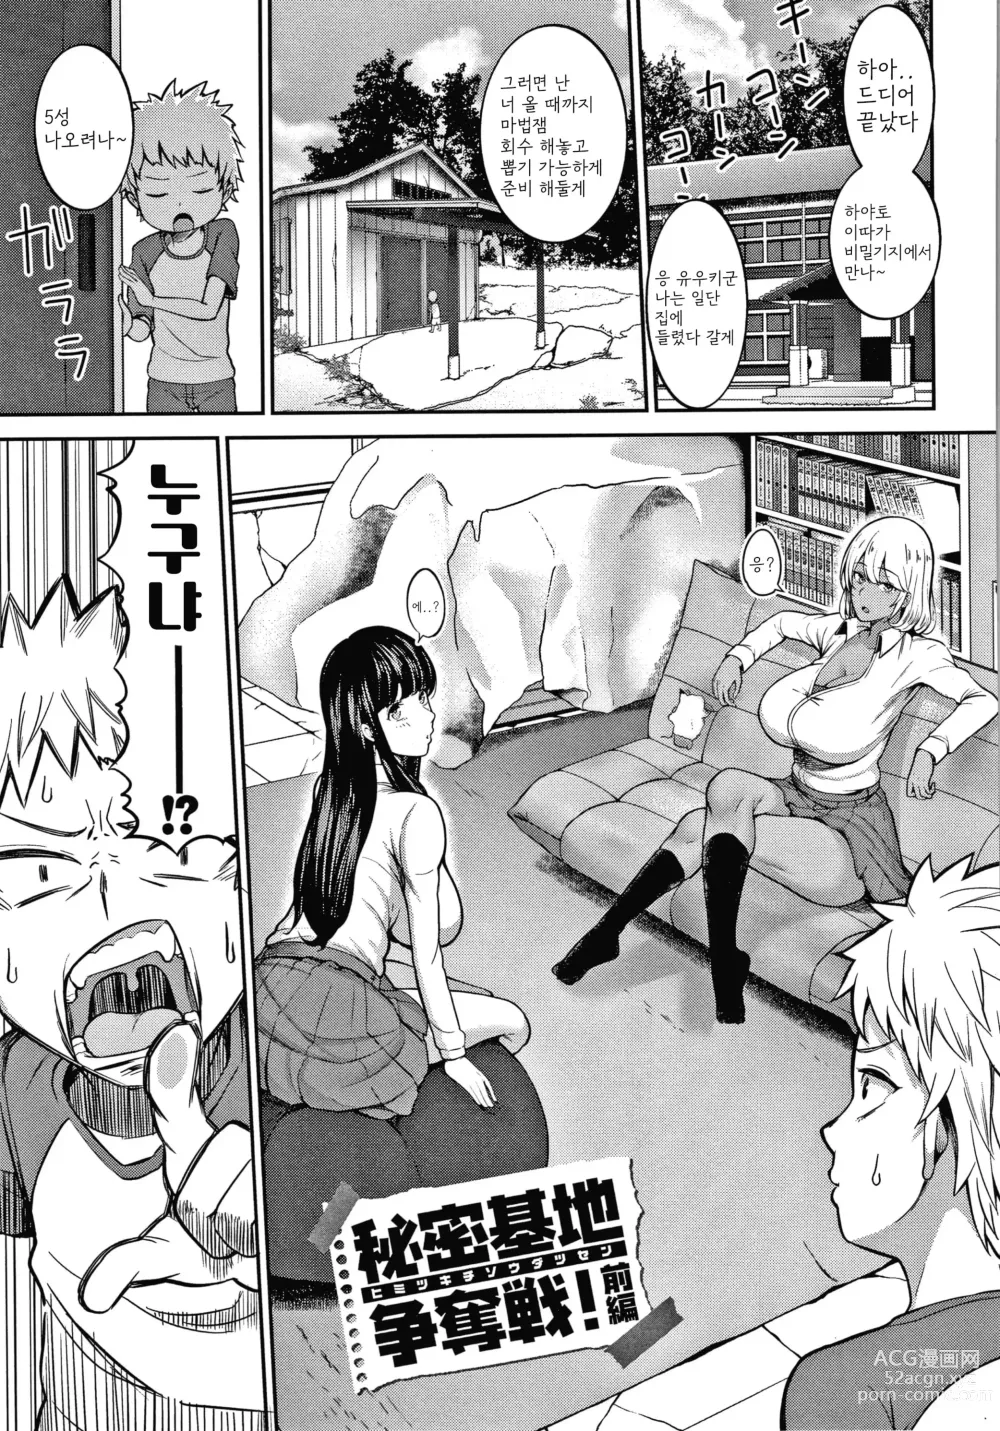 Page 1 of manga Himetsukichi Soudatsusen!